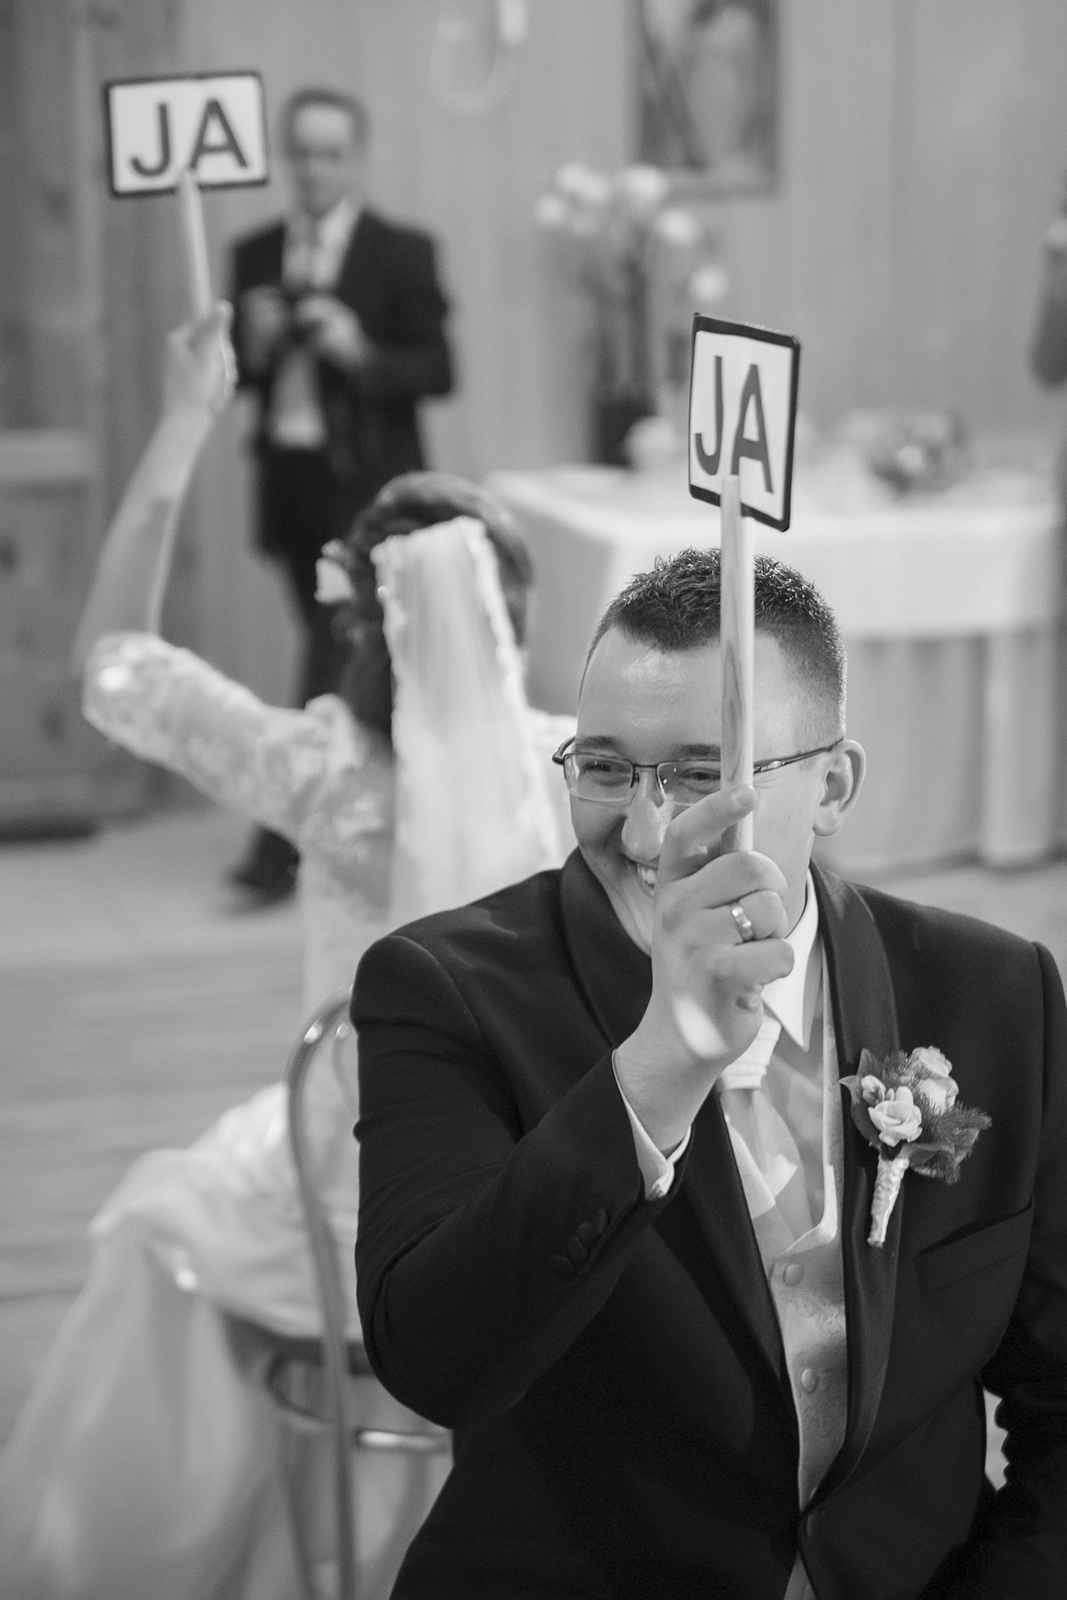 Pan młody po ślubie kościelnym pojechał na zabawę weselną i pozuje do zdjęć fotografowi